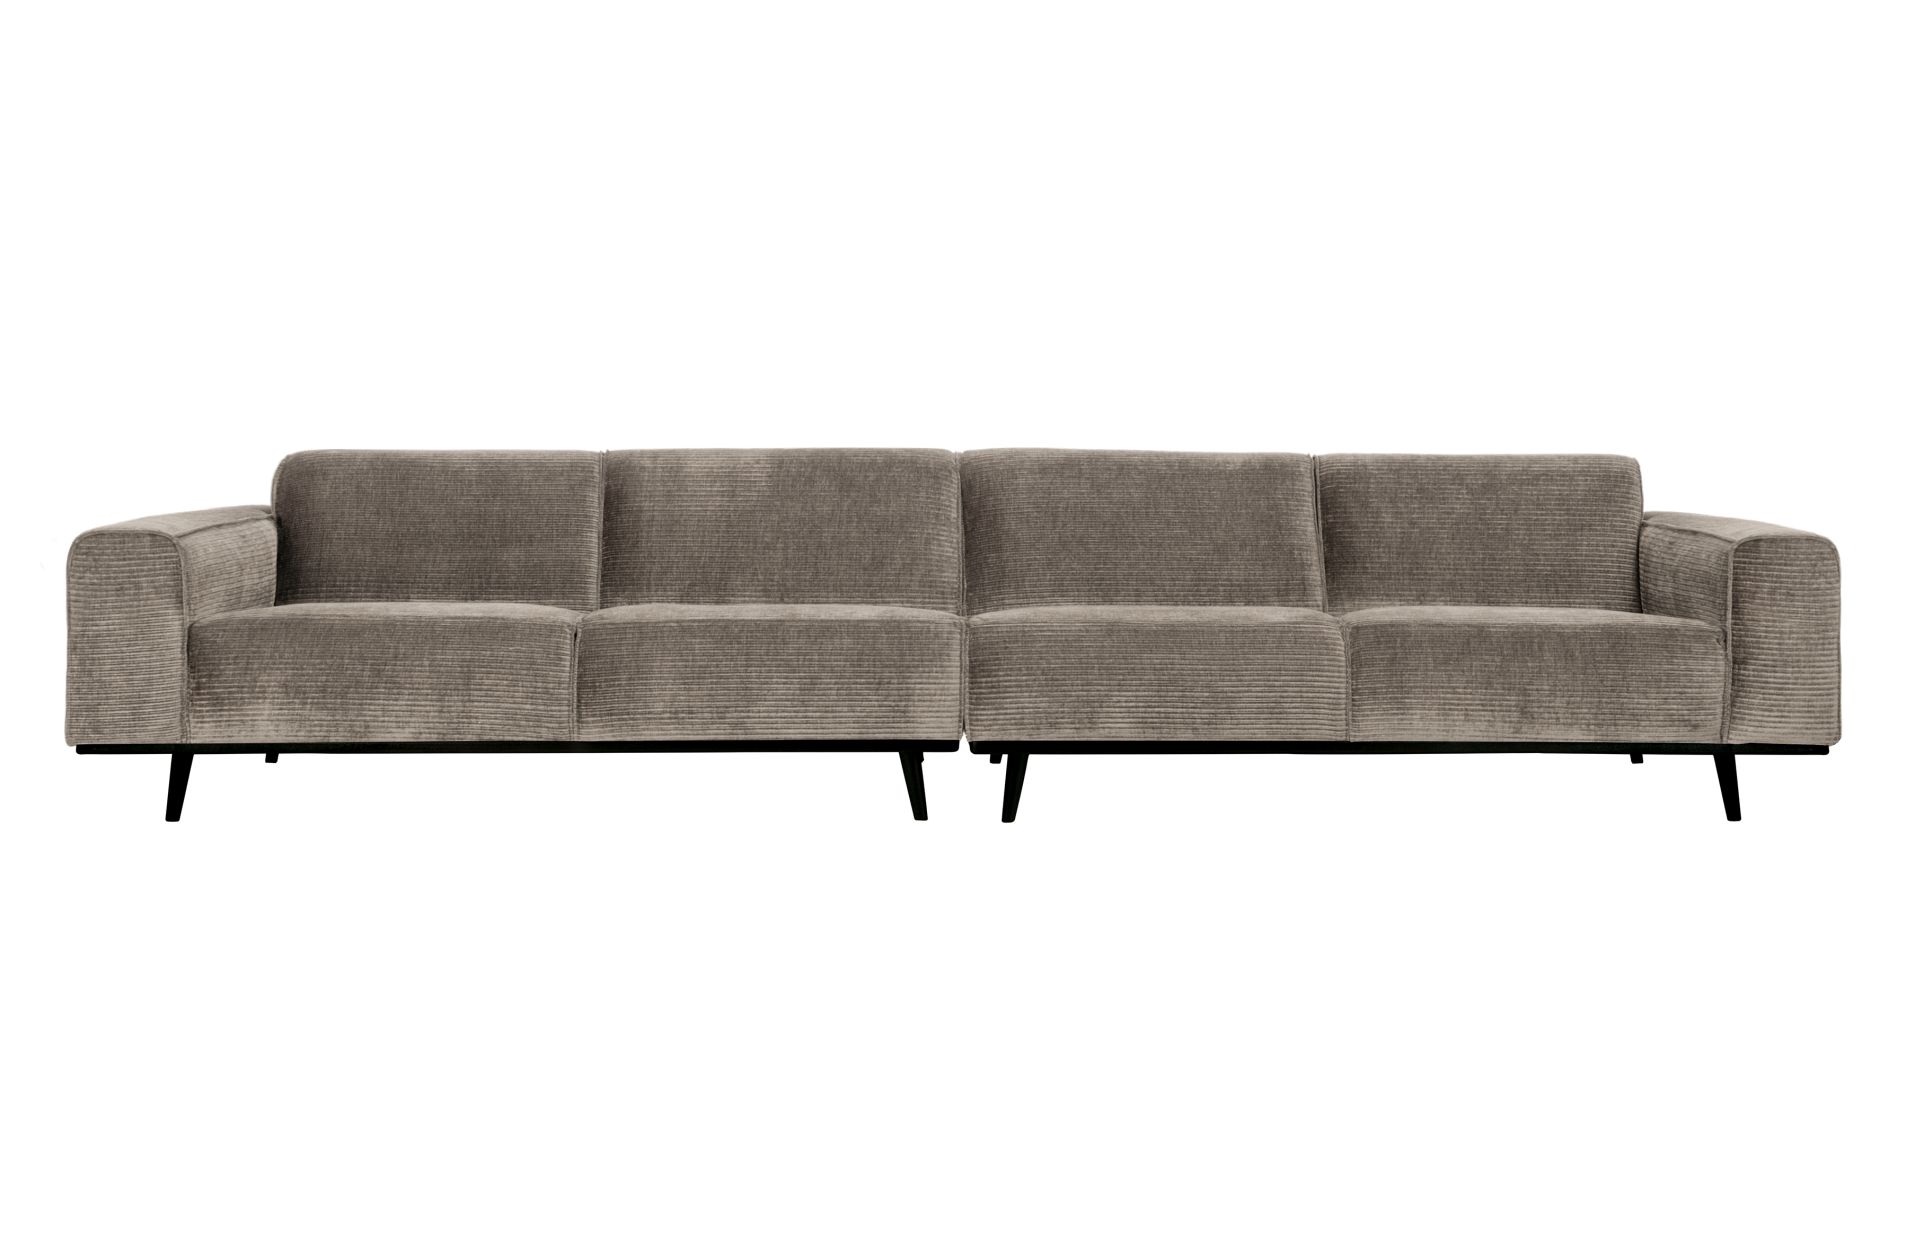 Das Sofa Statement überzeugt mit seinem modernen Design. Gefertigt wurde es aus gewebten Jacquard, welches einen Beige Farbton besitzen. Das Gestell ist aus Birkenholz und hat eine schwarze Farbe. Das Sofa hat eine Breite von 372 cm.